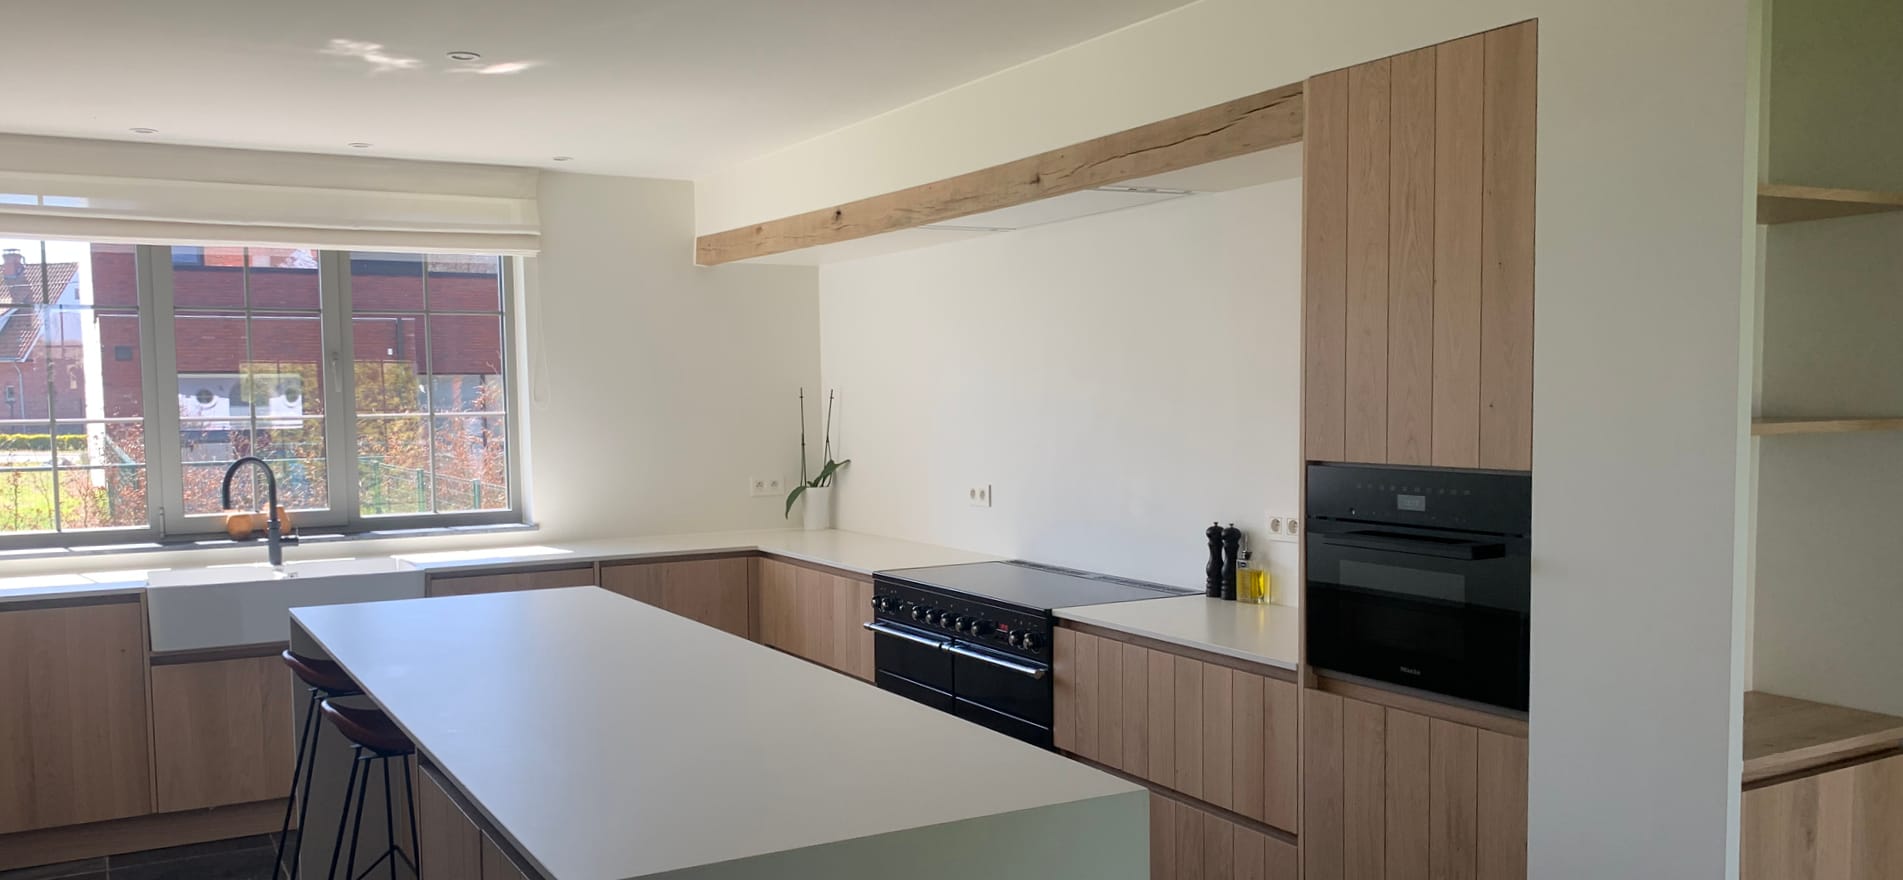 witte keuken schilderen met hout